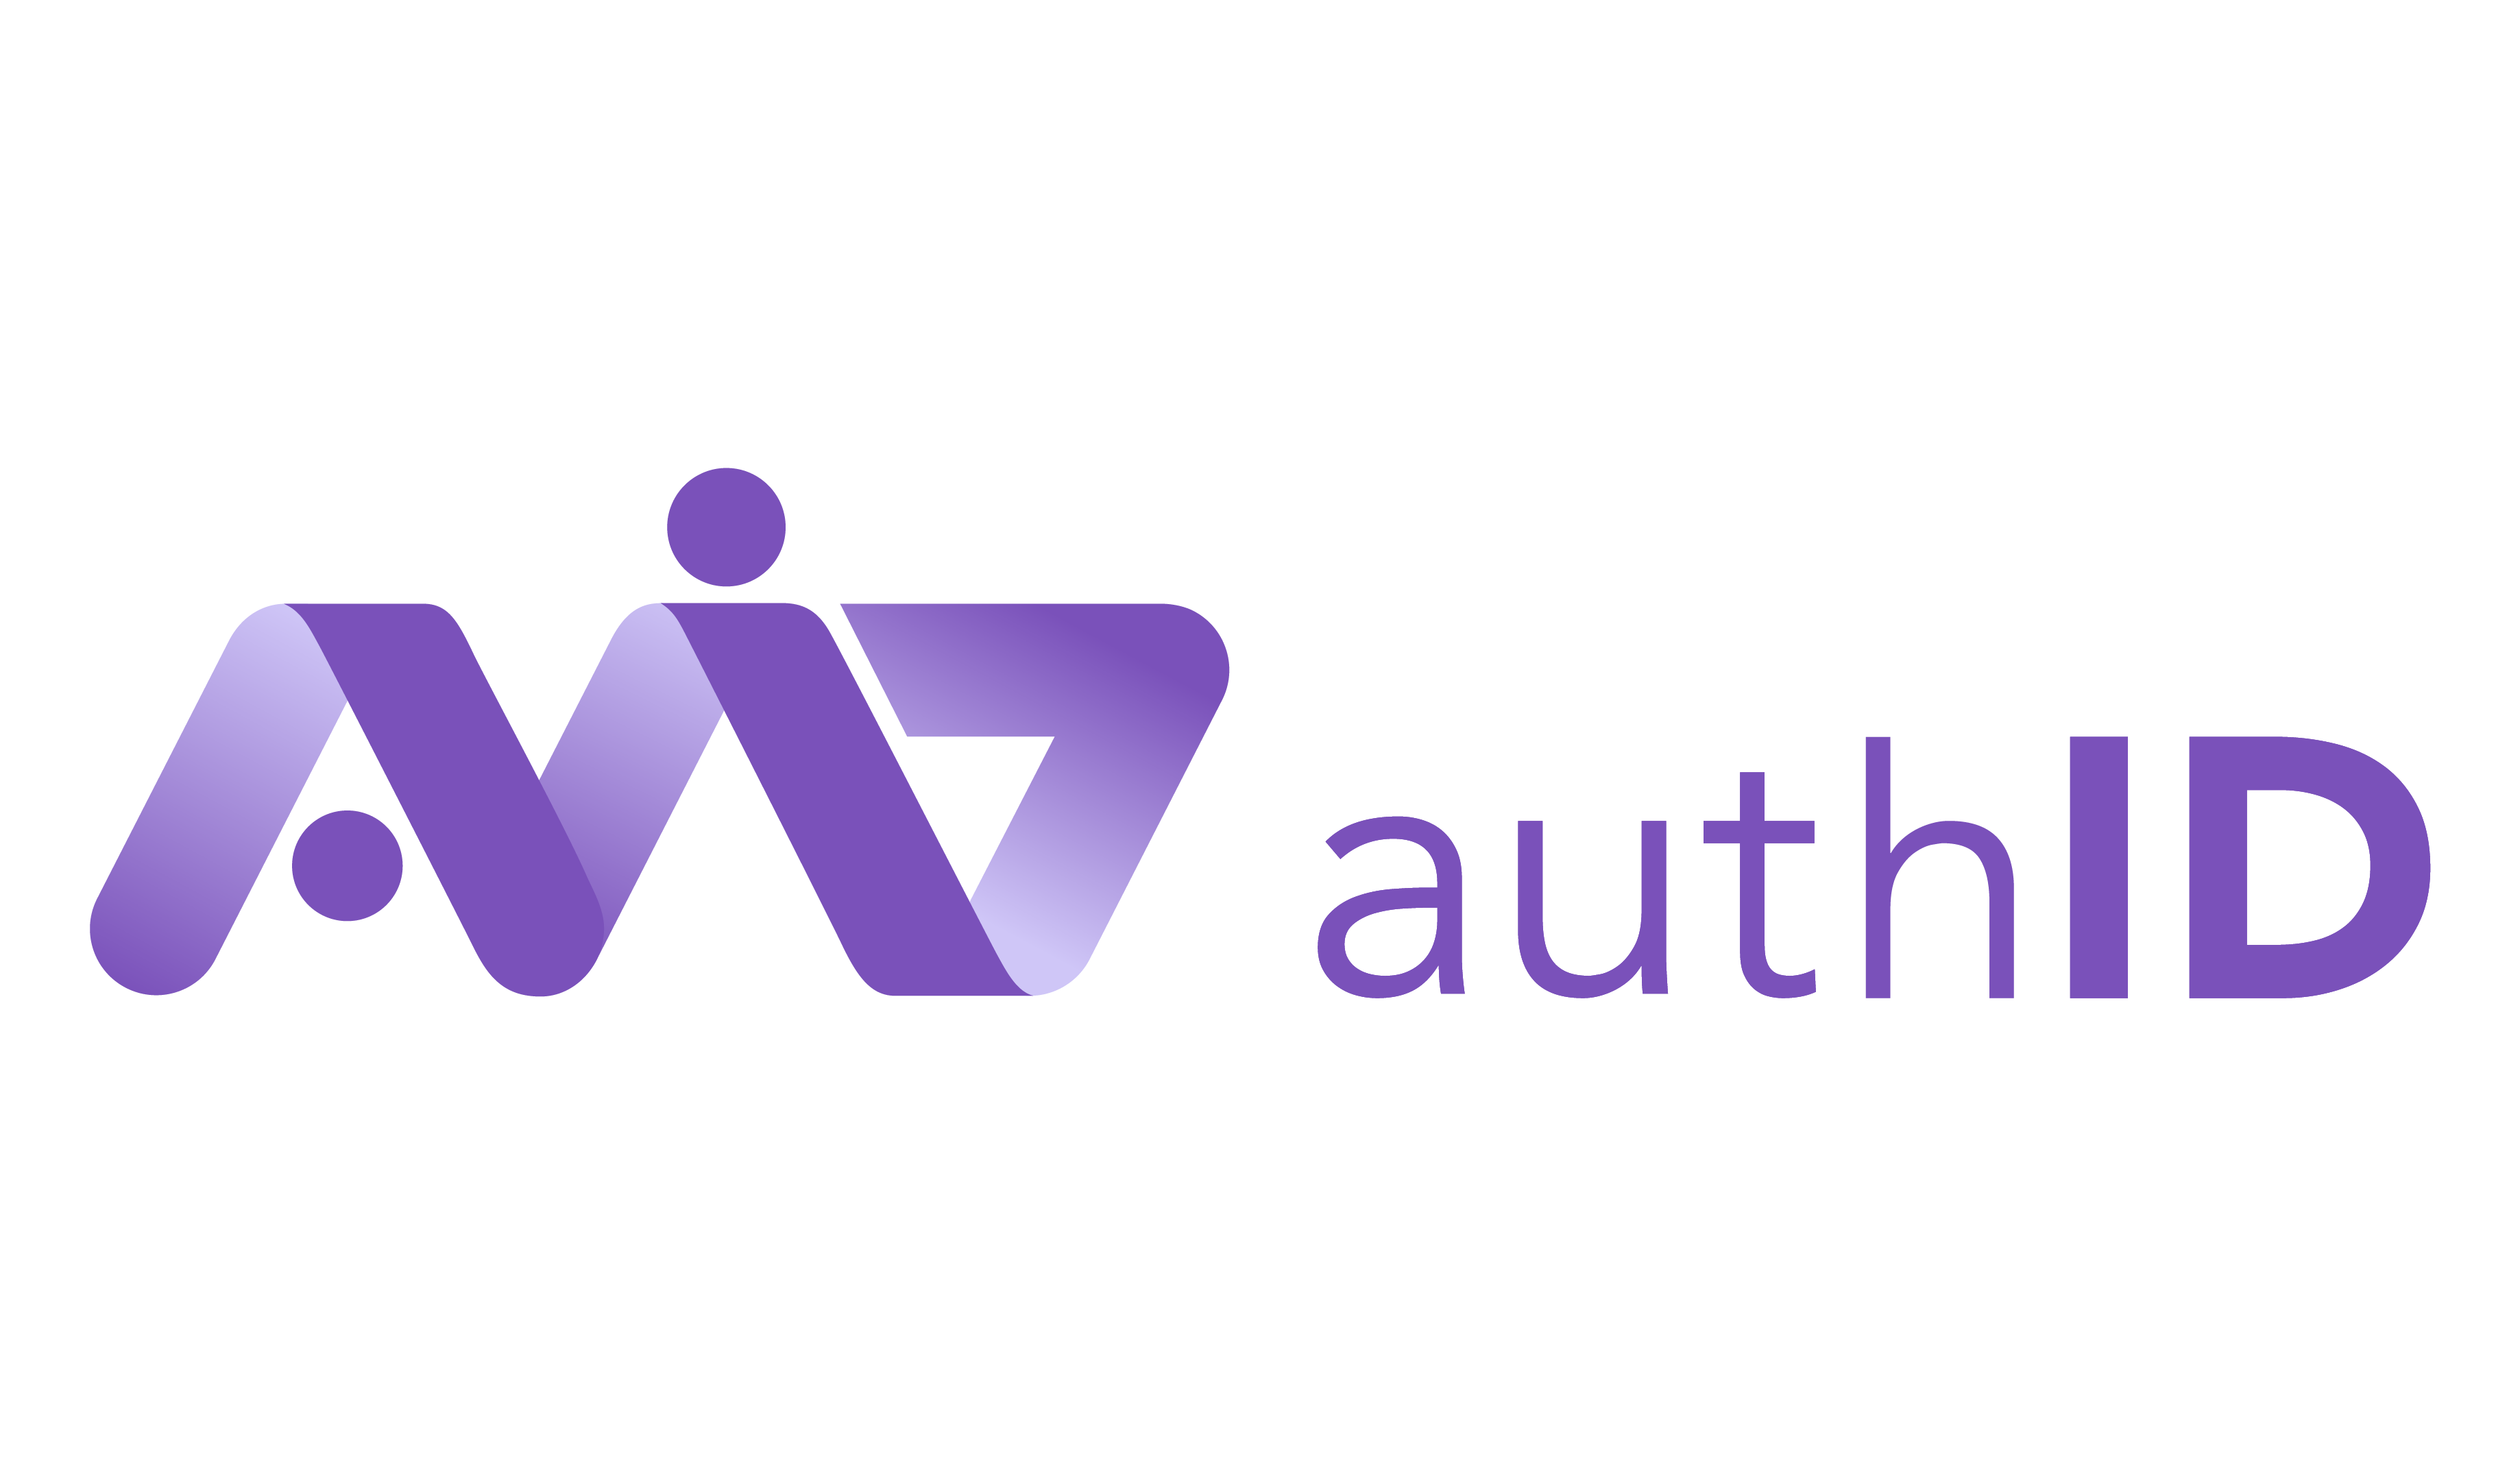 authID Logo